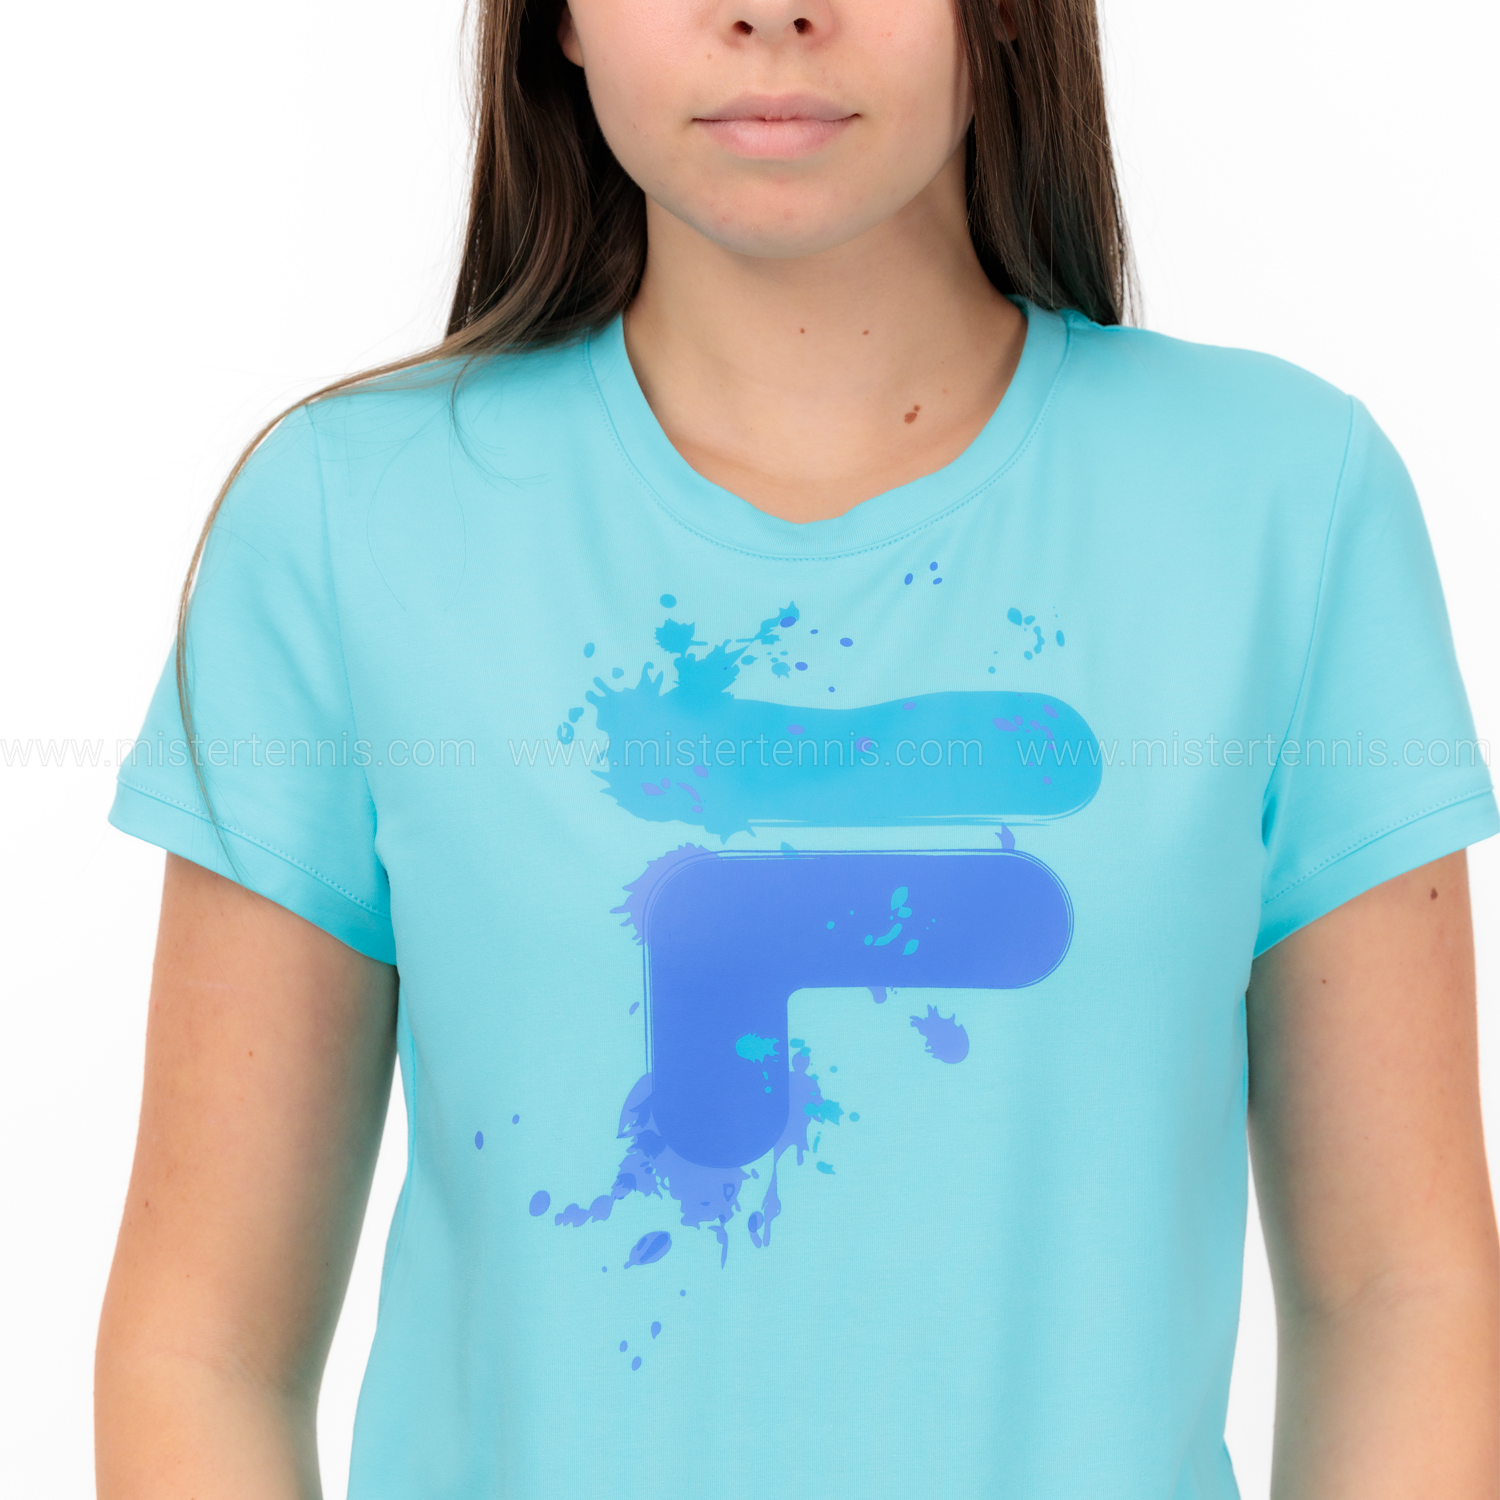 Fila Emelie Camiseta - Blue Radiance